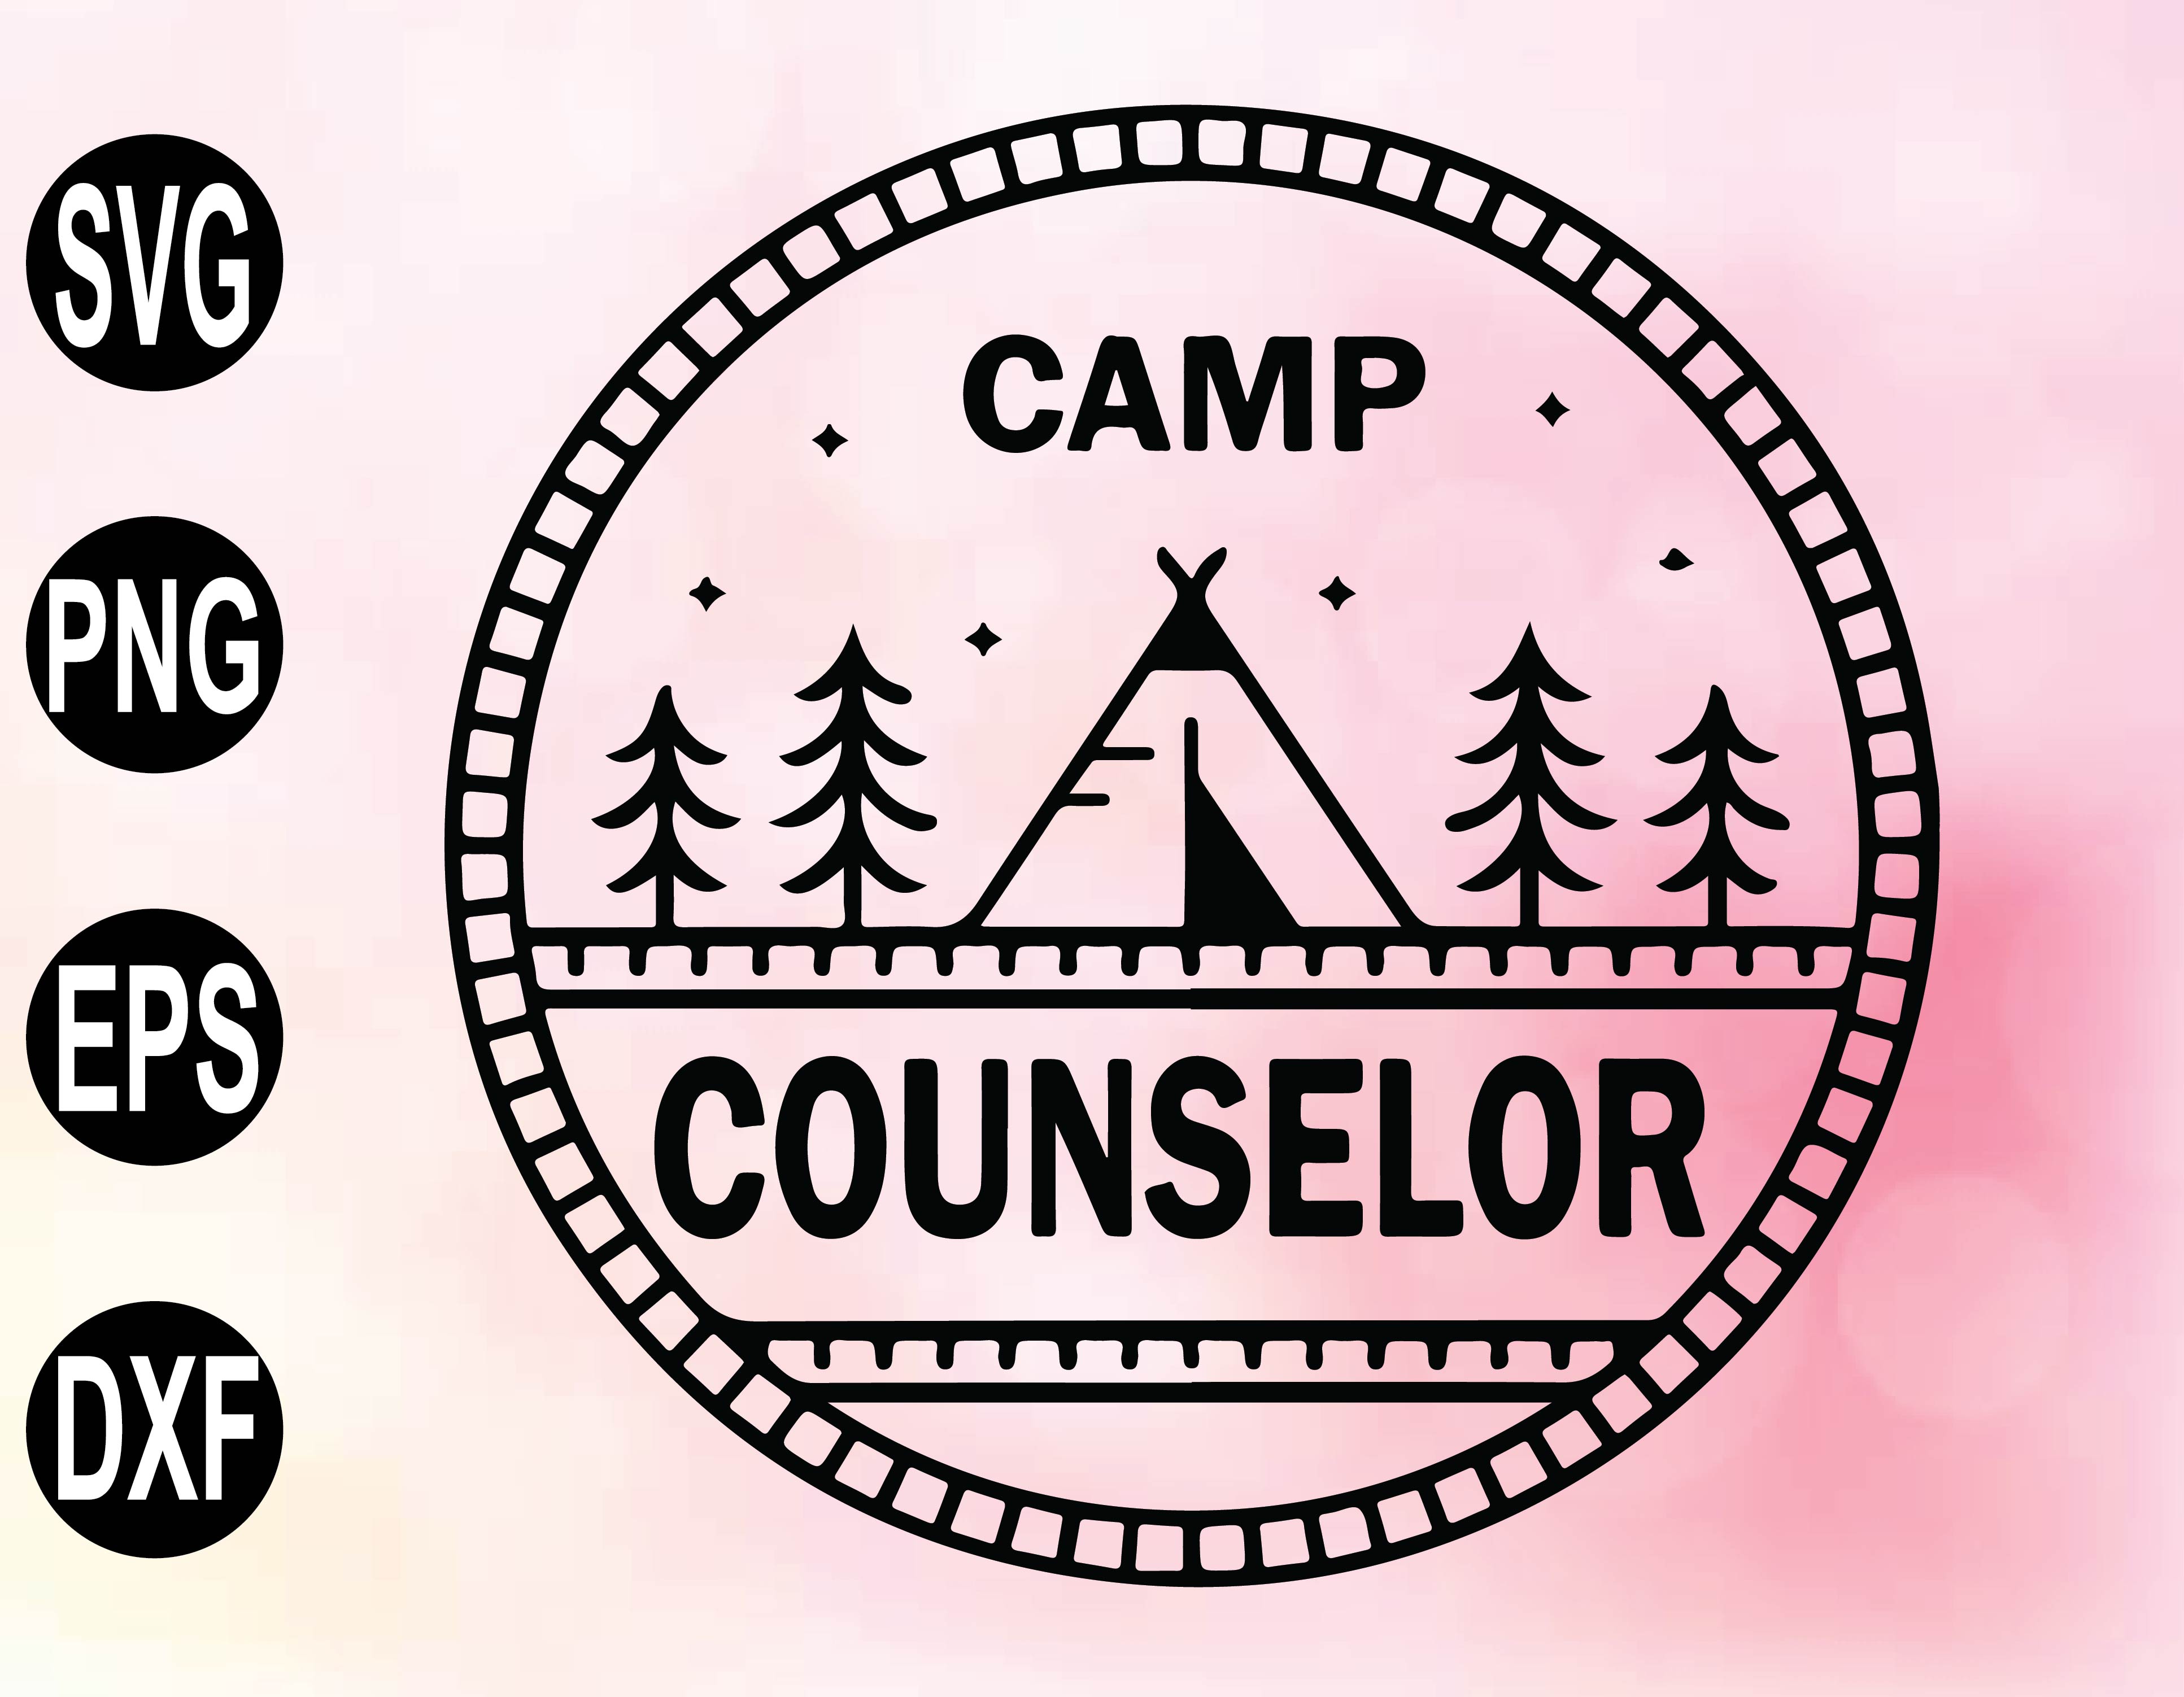 Download Camping Svg Camp Counselor Svg Summer Camp Svg Camp Counselor Svg Summer Svg School Camp Kids Camp Woods Camp Svg Png Eps Dxf Digital File Designbtf Com